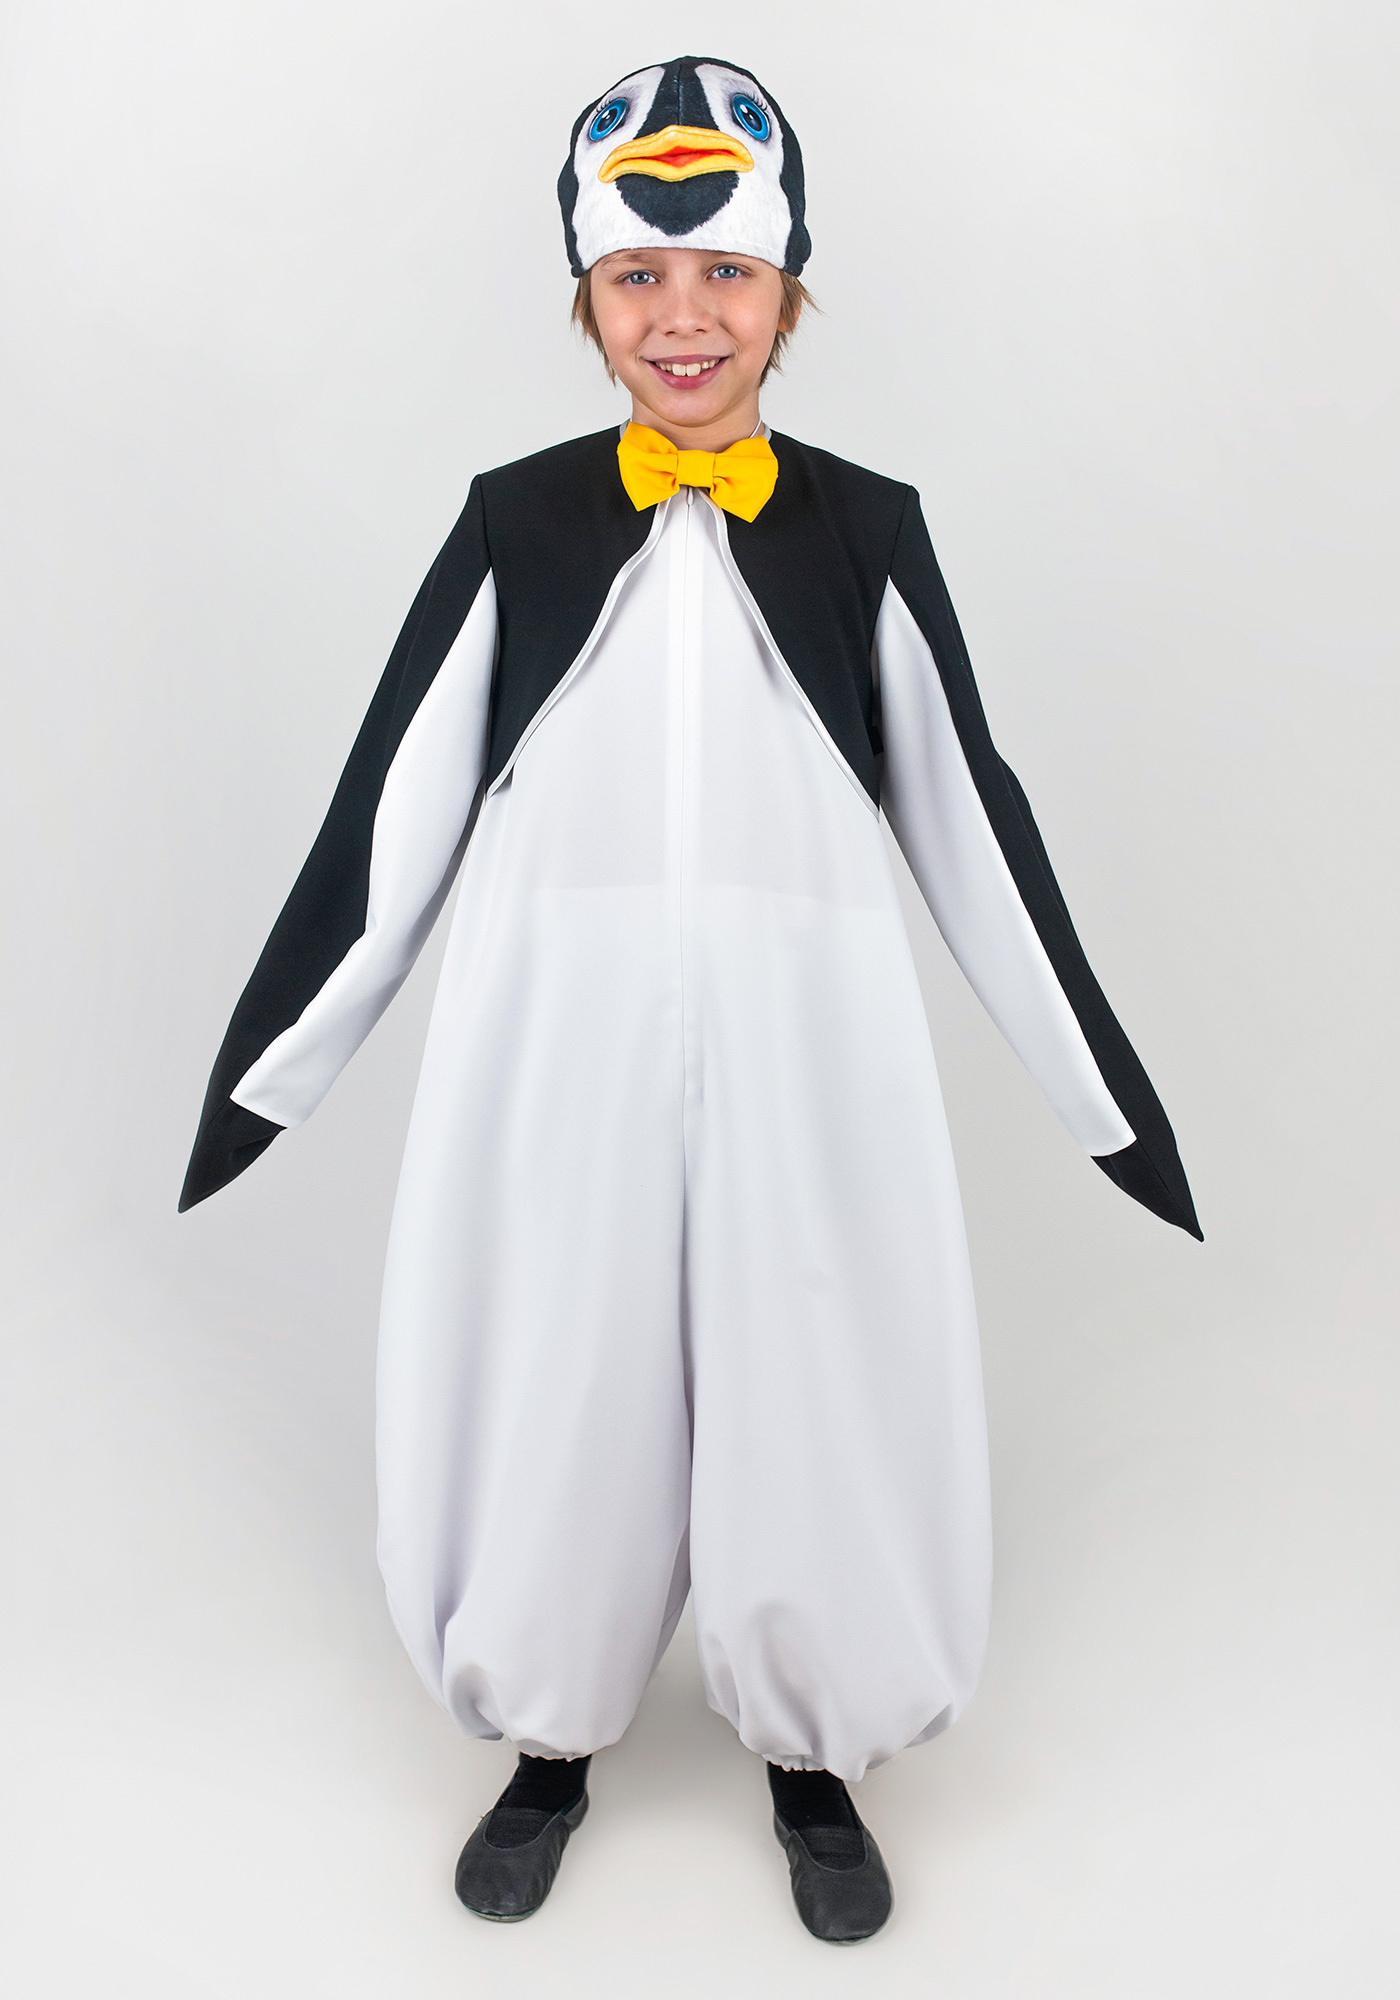 Купить Костюм Пингвина для детей в магазине развивающих игрушек Детский сад